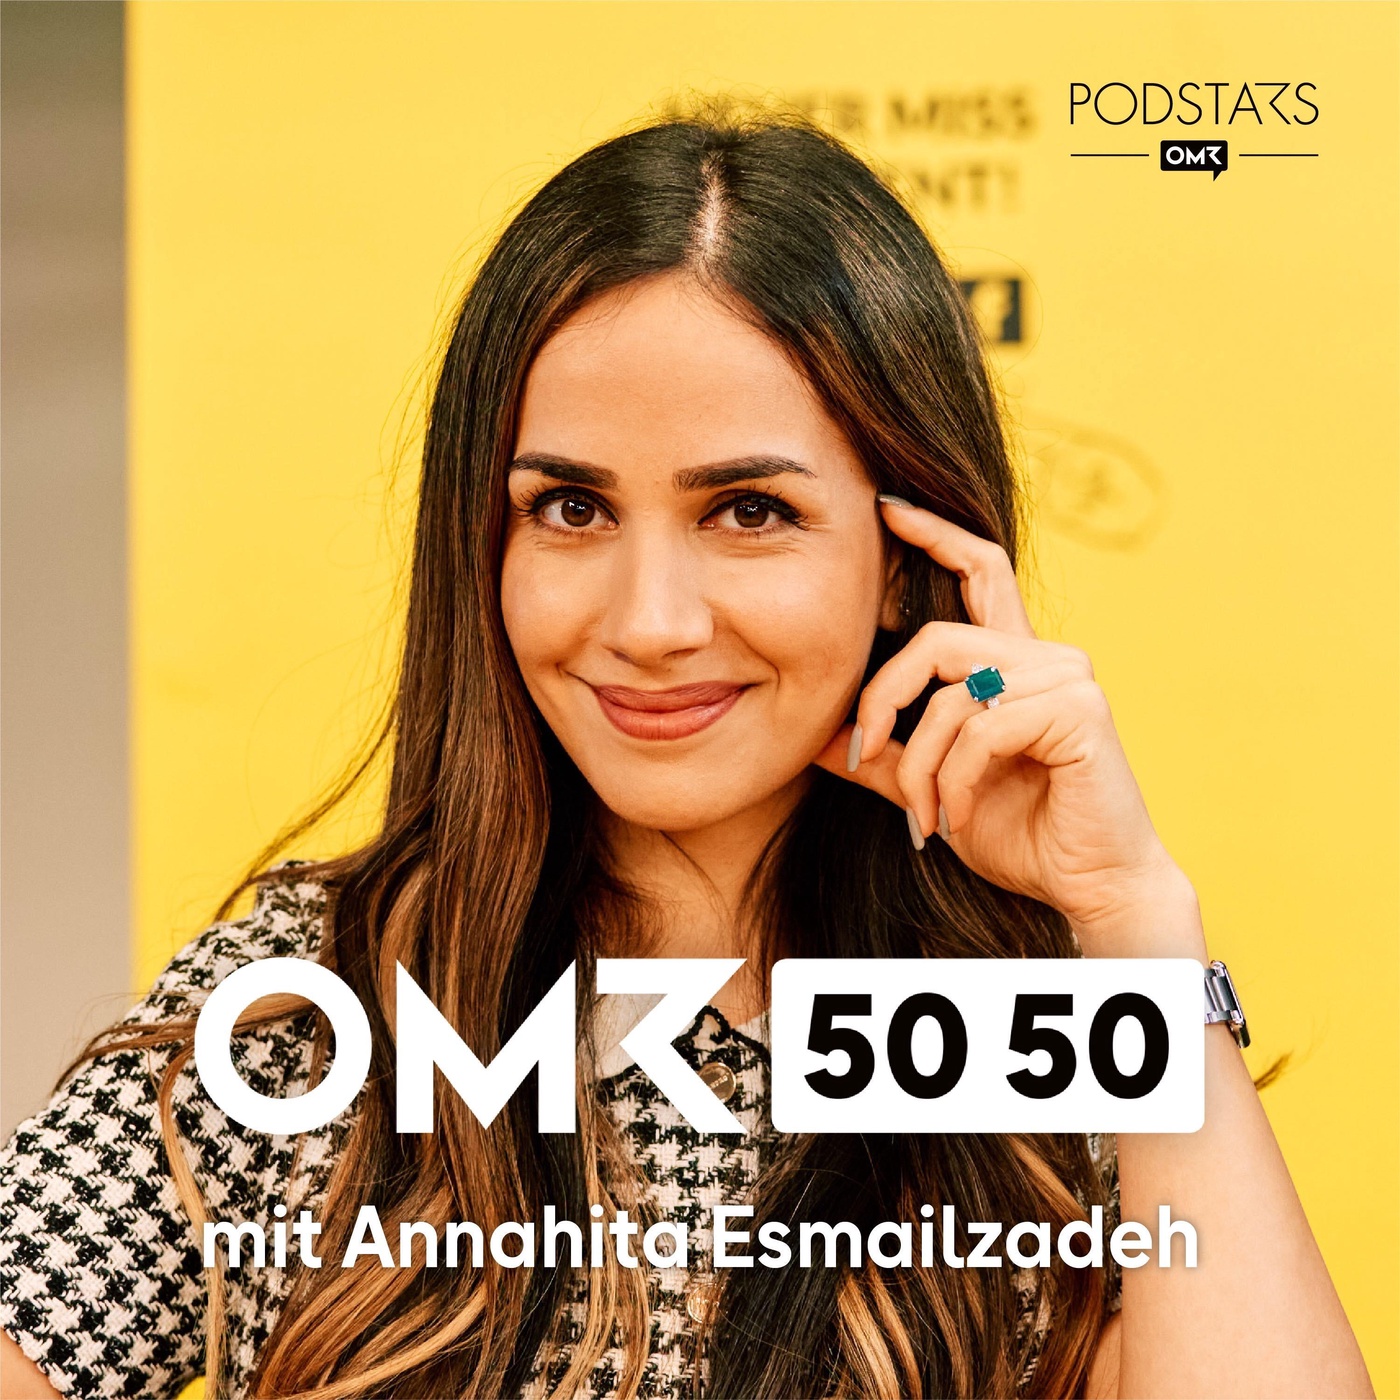 #65 Annahita Esmailzadeh über unbewusste Vorurteile in der Arbeitswelt